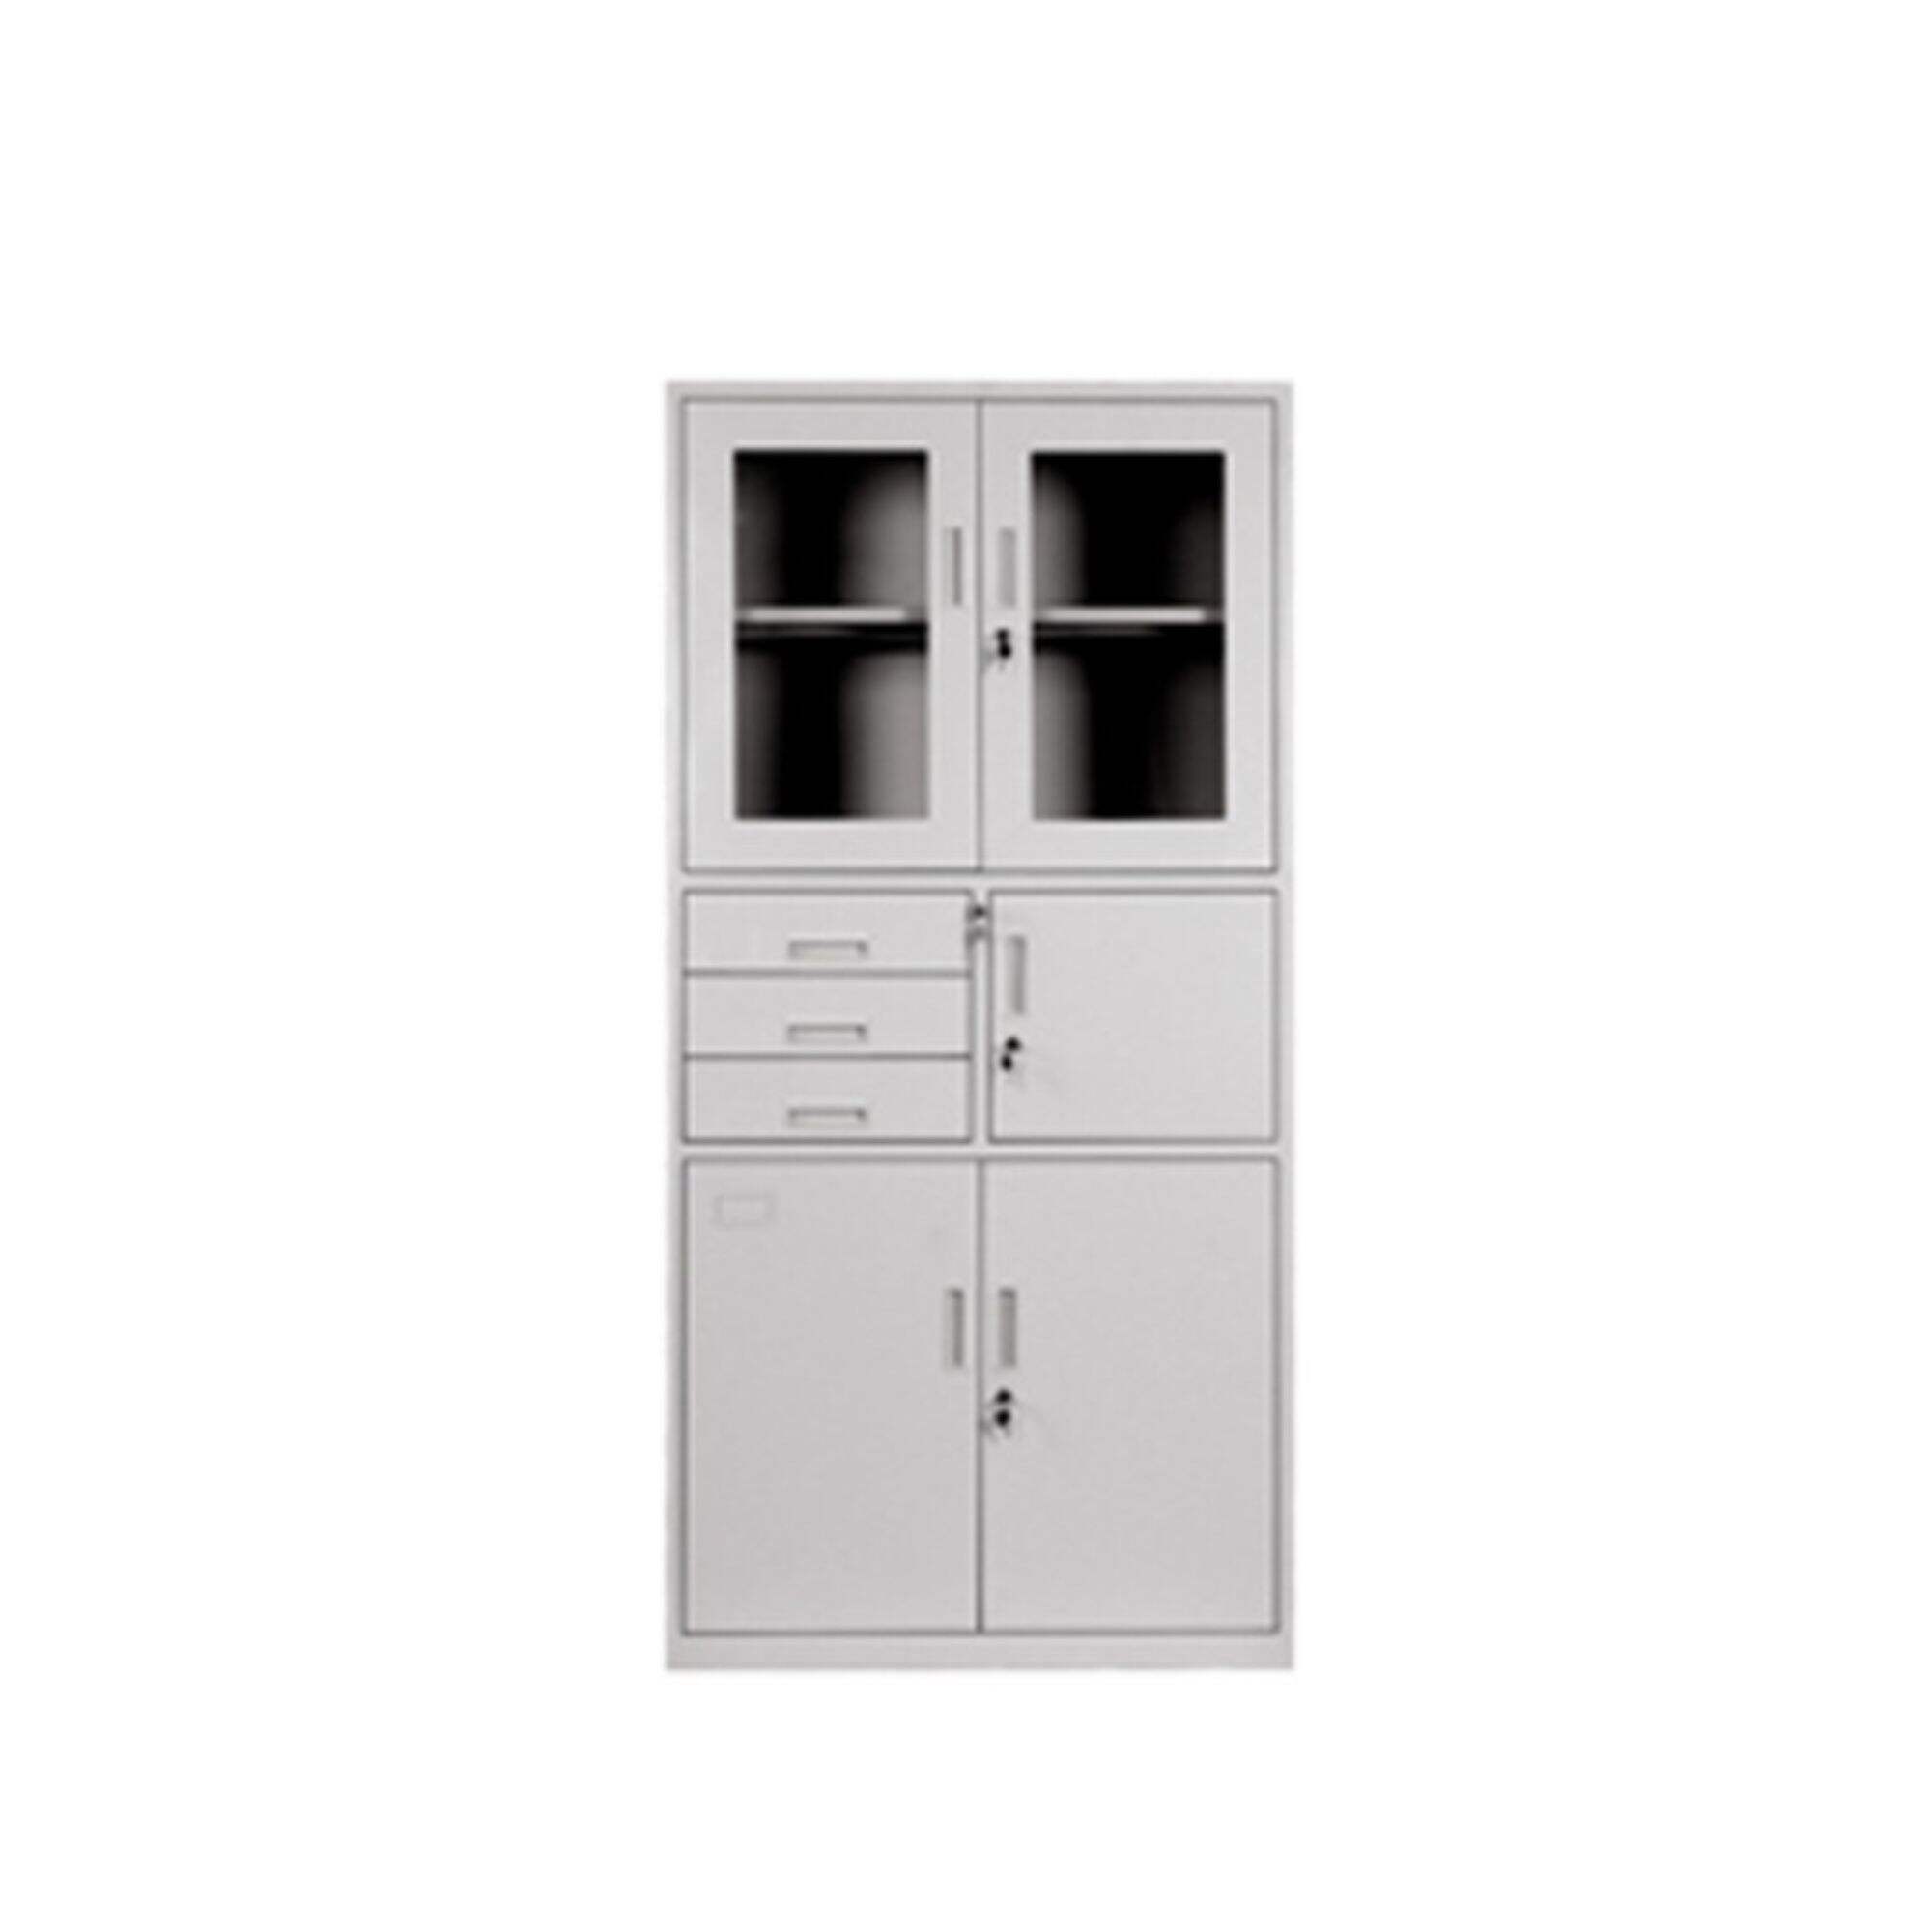 XHF-12 Storage Locker Instrument Cabinet